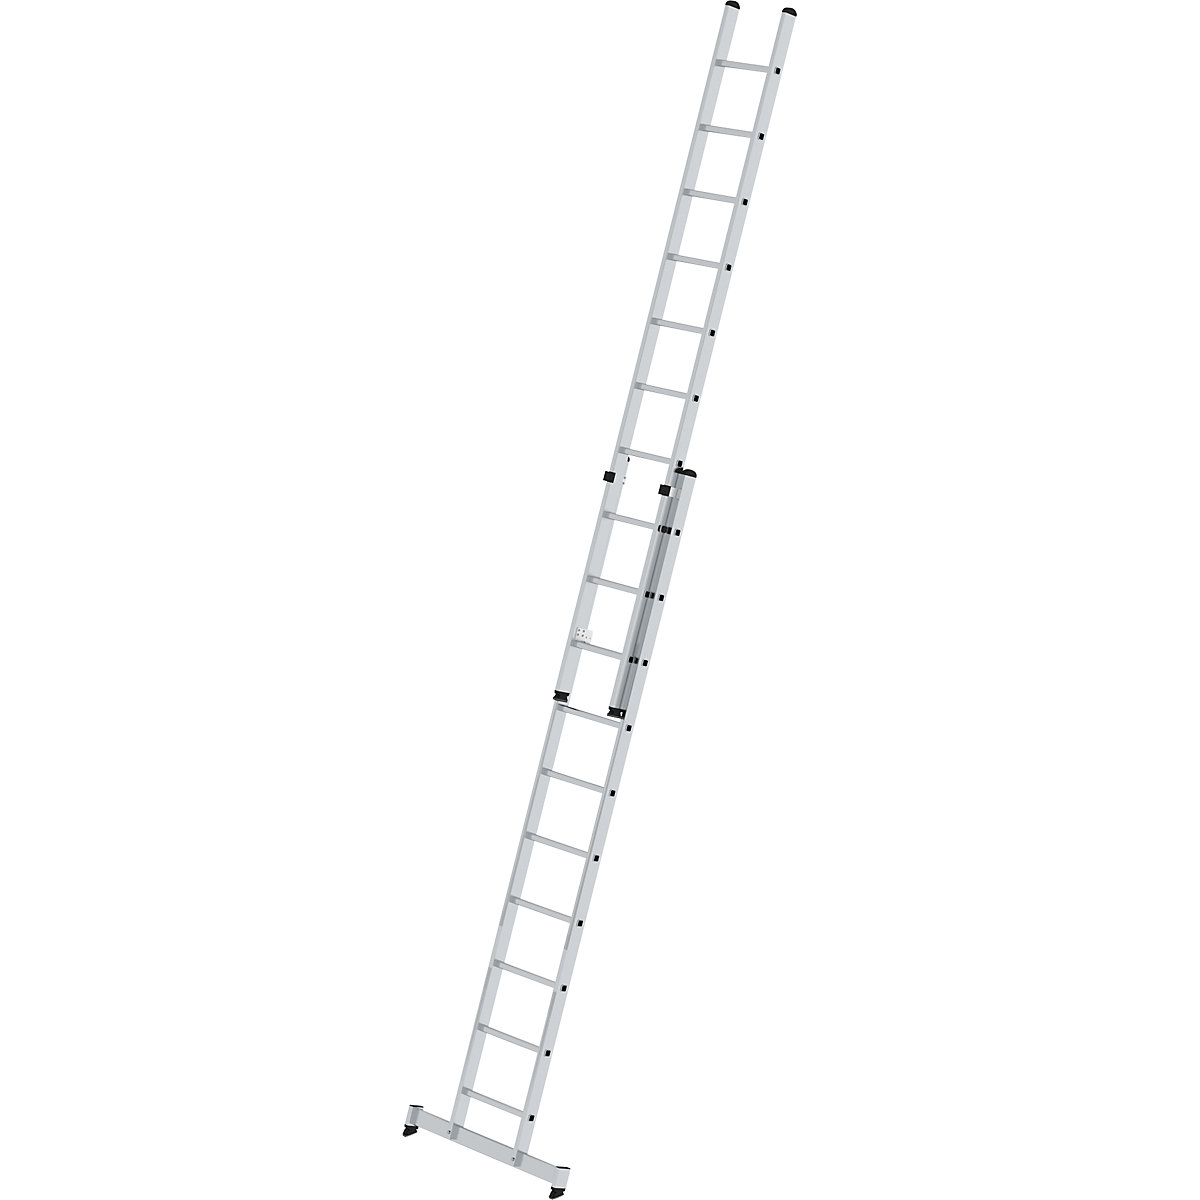 Aanlegladder, in hoogte verstelbaar – MUNK, schuifladder, 2-delig, 2 x 10 sporten, met nivello®-stabiliteitsbalk-5